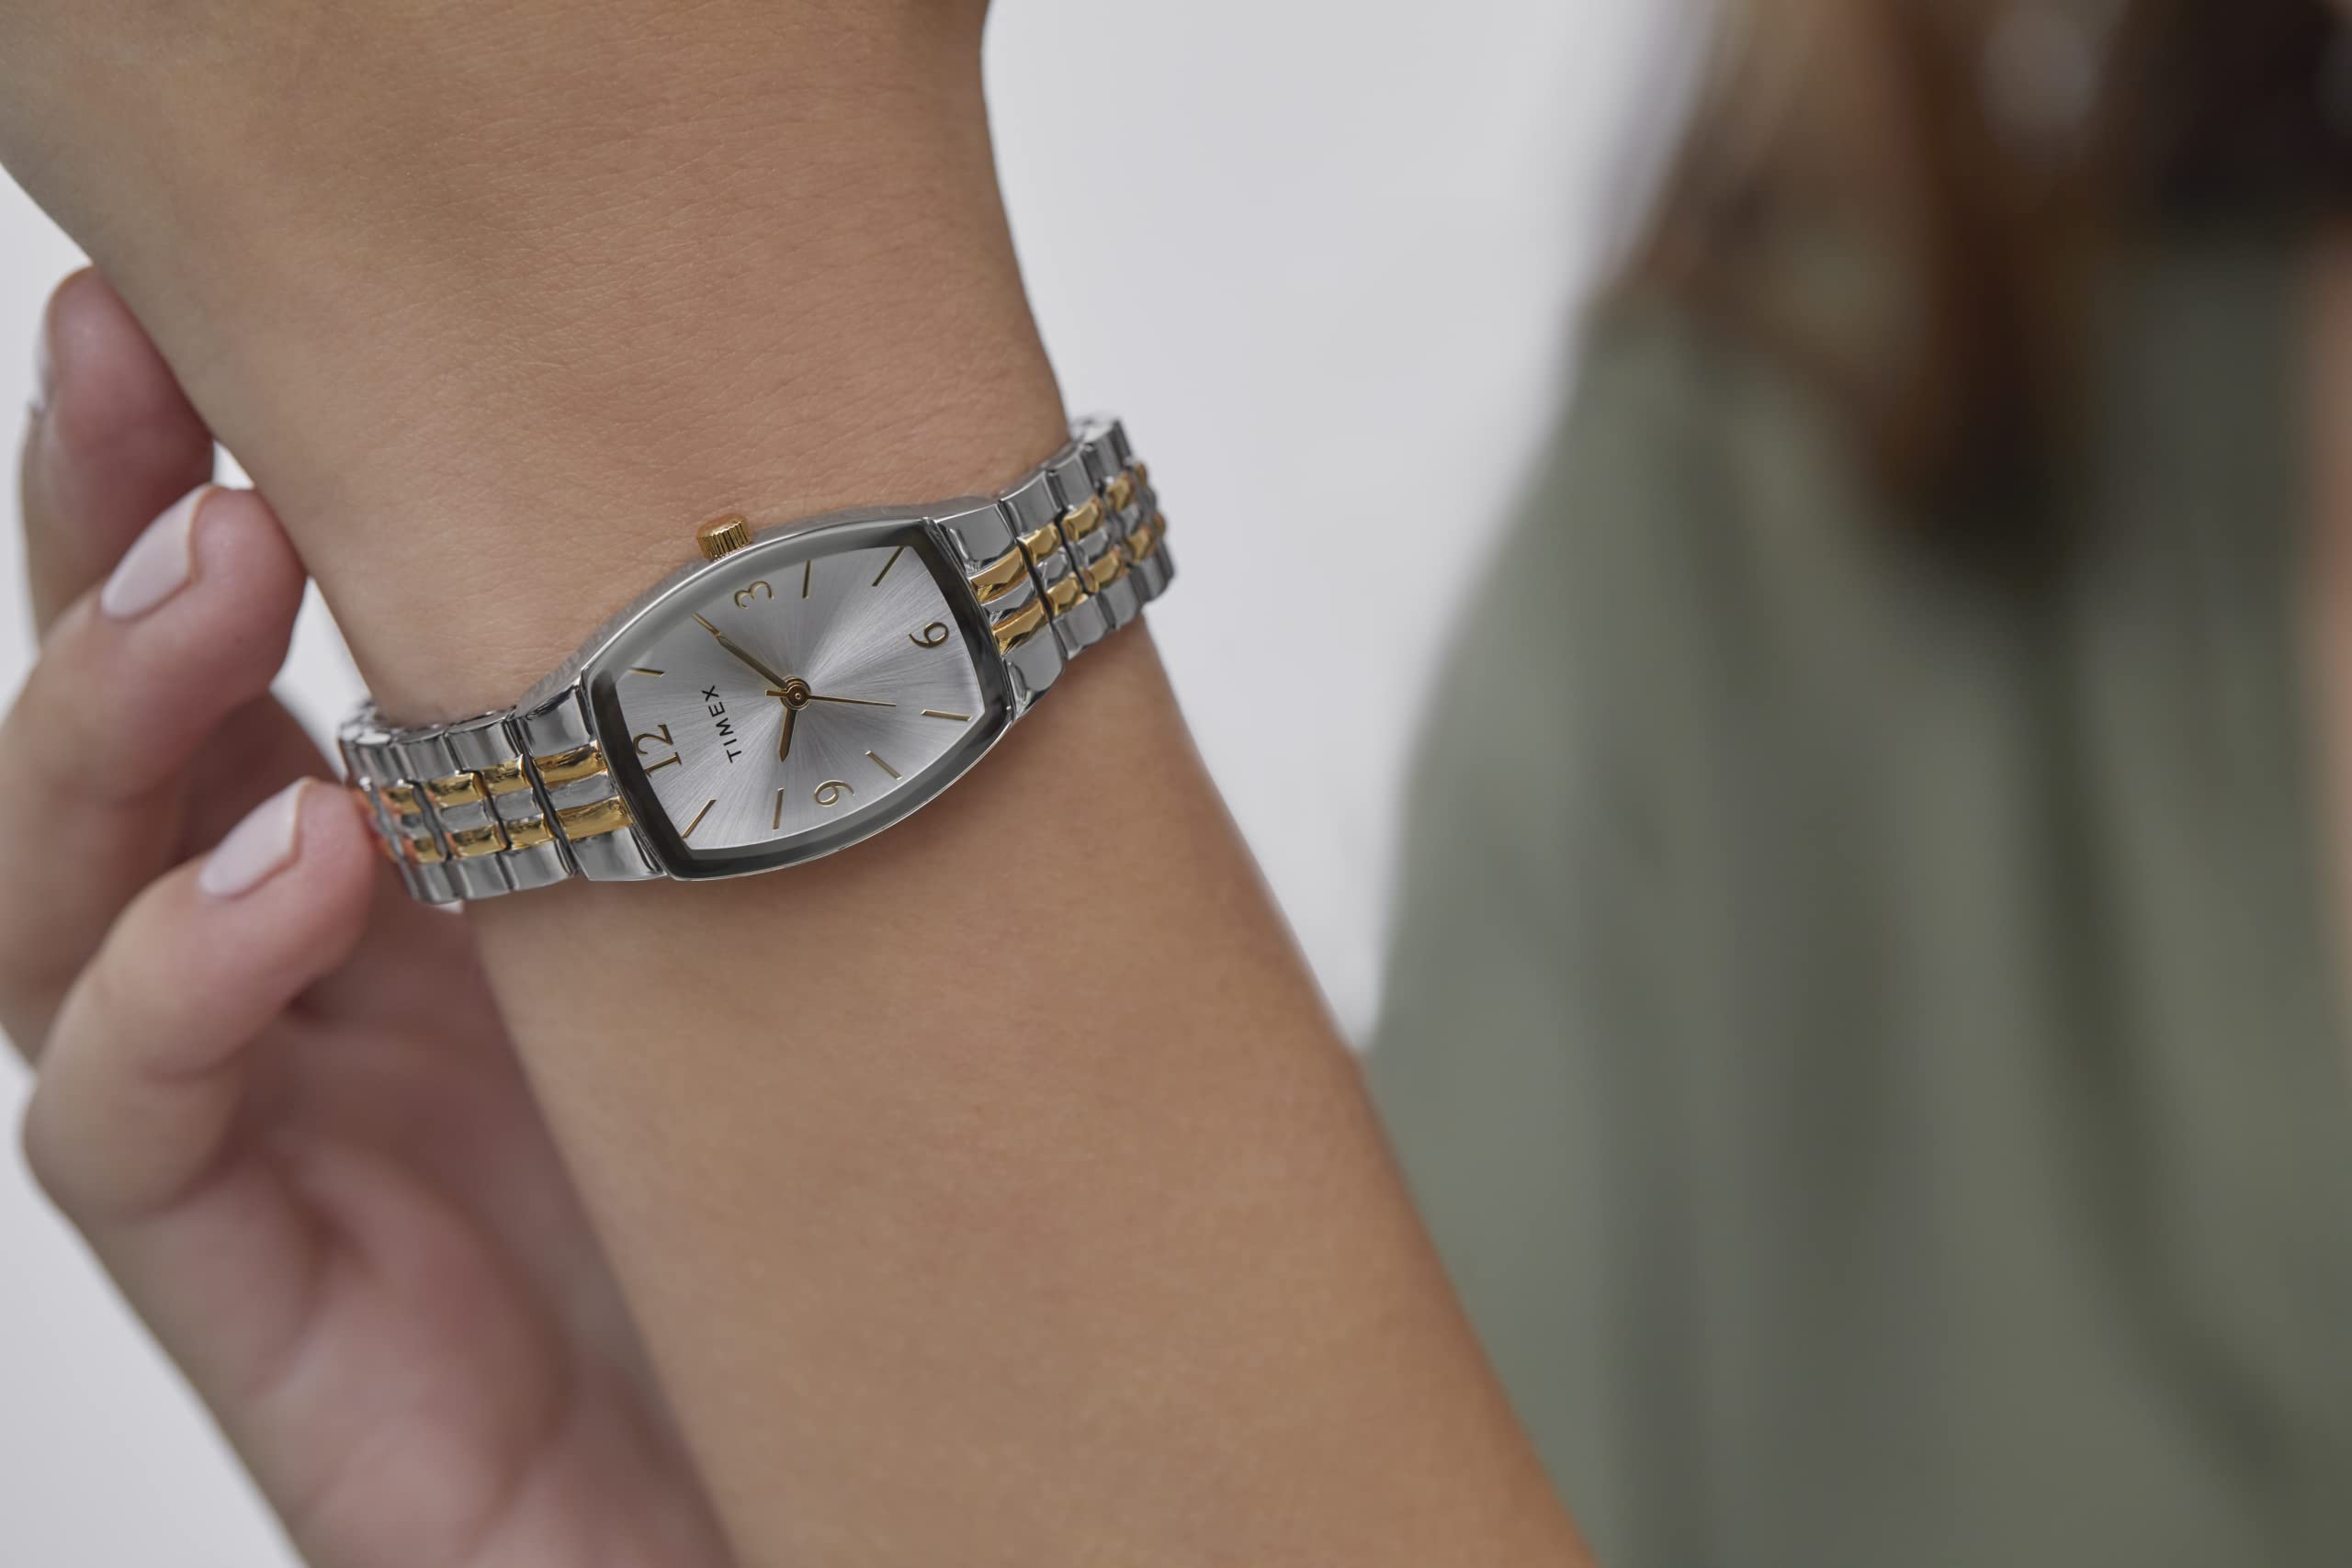 Timex Women's Dress Tonneau 21mm Watch